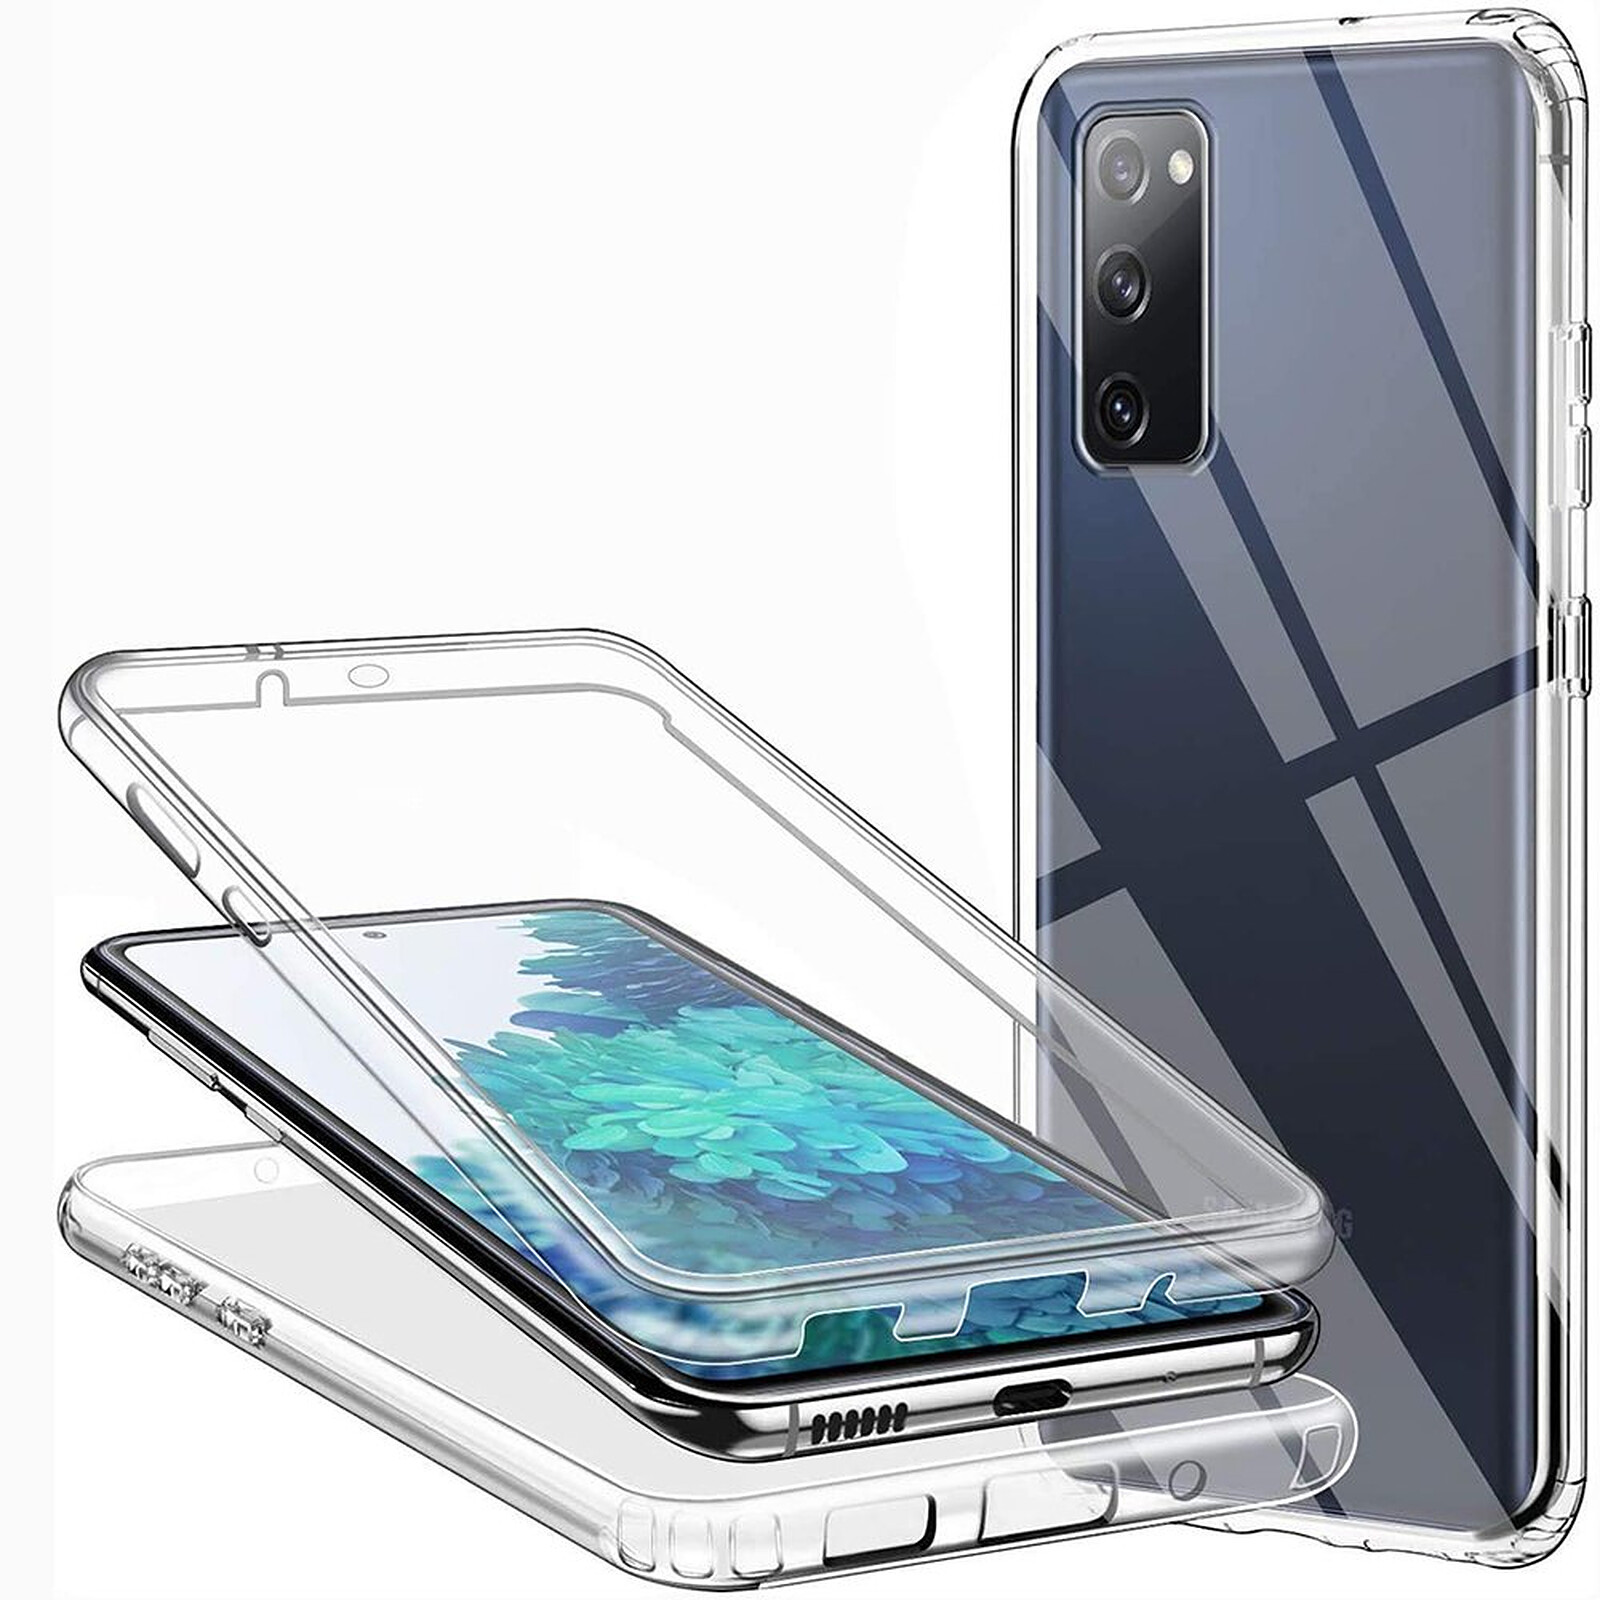 Coque silicone fine Samsung Galaxy S20 FE (transparente) - Coque -telephone.fr